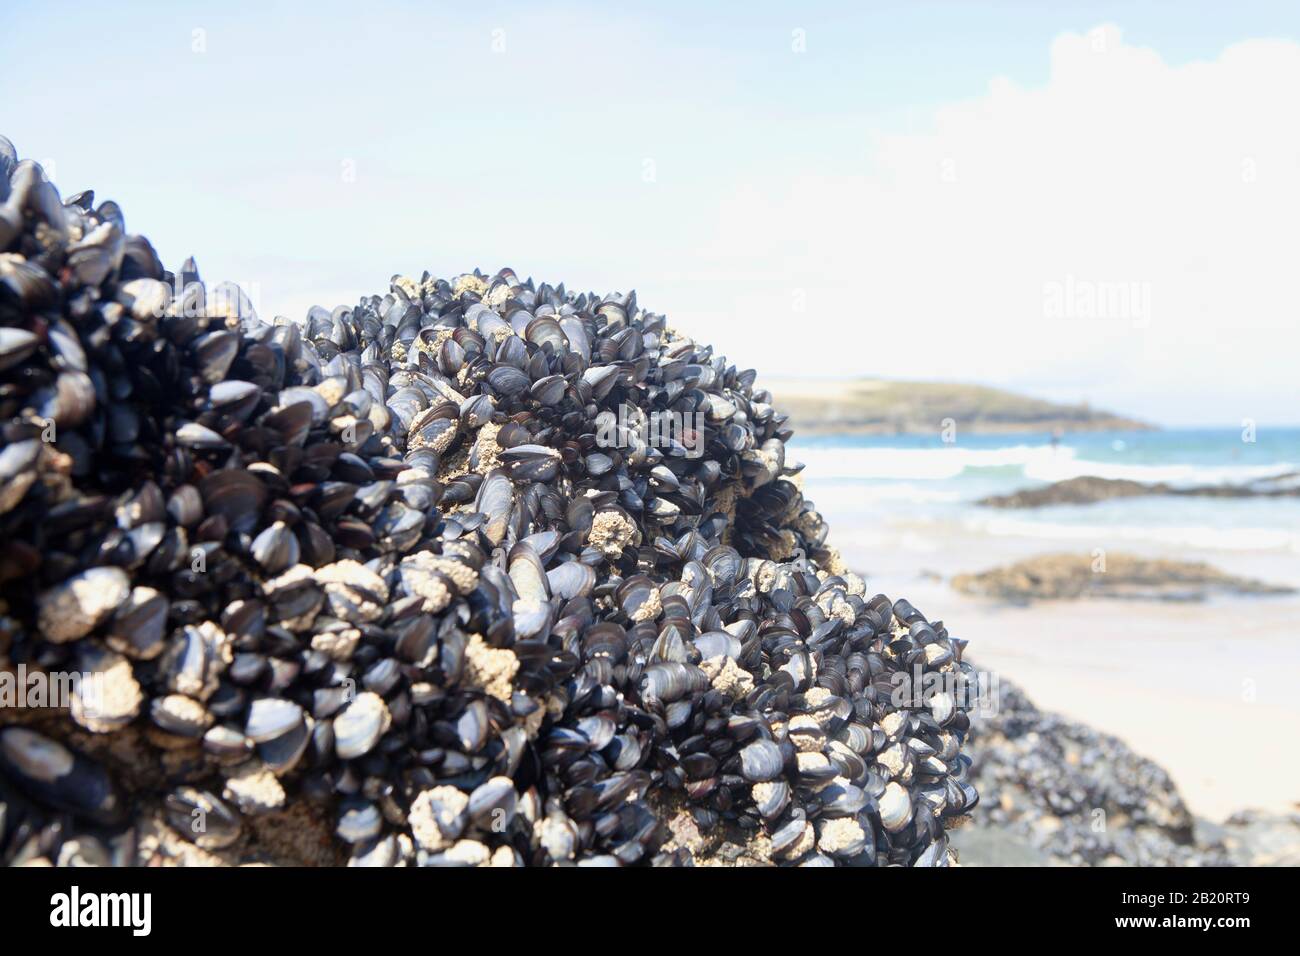 Una gran roca expuesta en marea baja, cubierta de mejillones. Harlyn Bay, North Cornwall, Reino Unido. Foto de stock